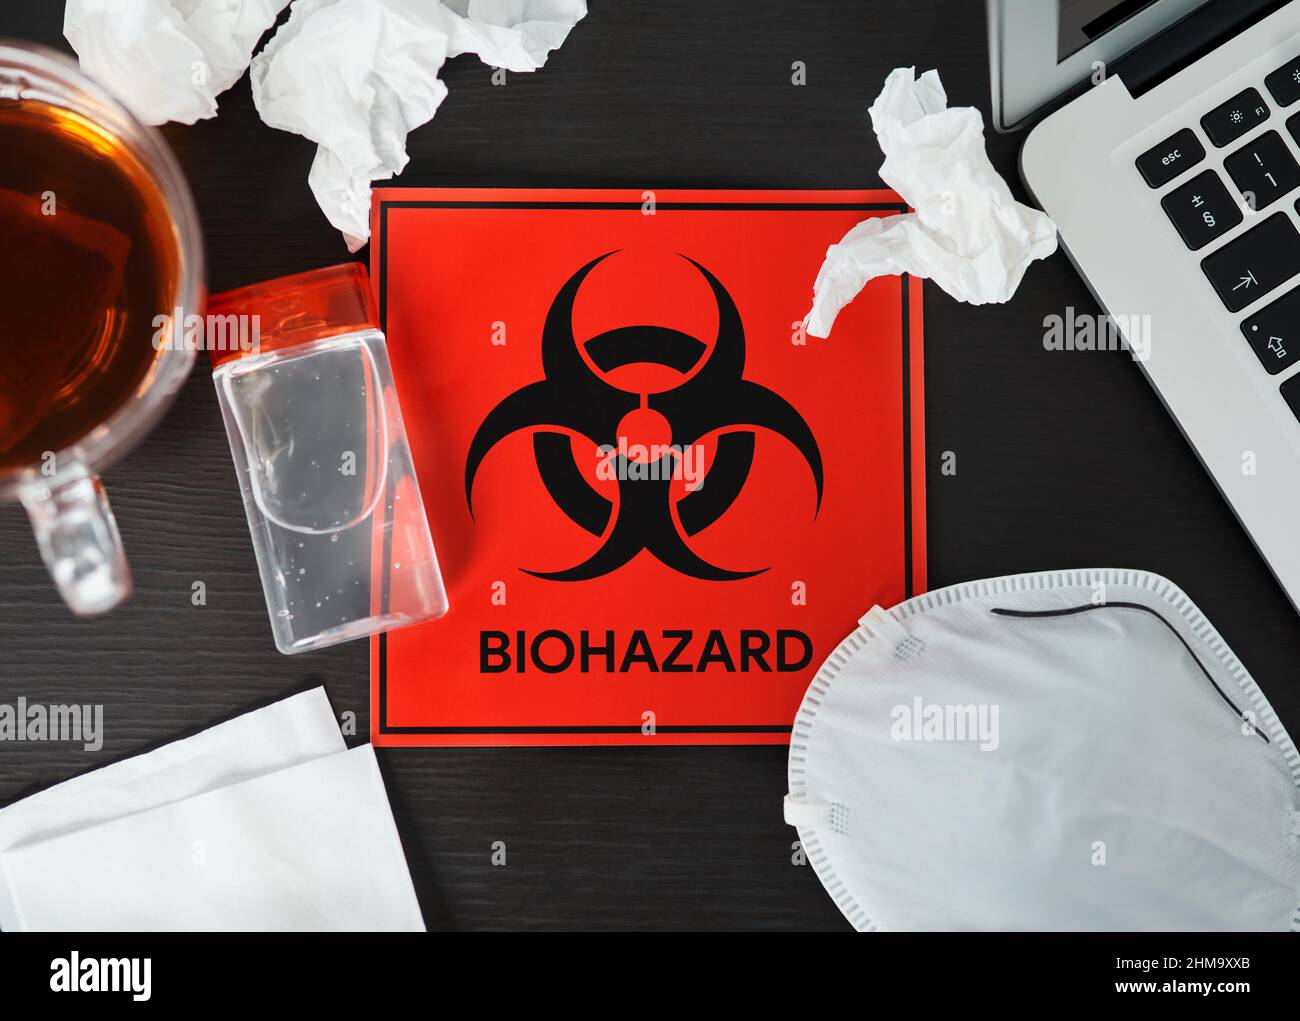 Bleiben Sie zu Hause, um zu verhindern, dass sich Ihre Kollegen infizieren. Aufnahme eines Schildes für biologische Gefahren auf einem Arbeitsplatz. Stockfoto